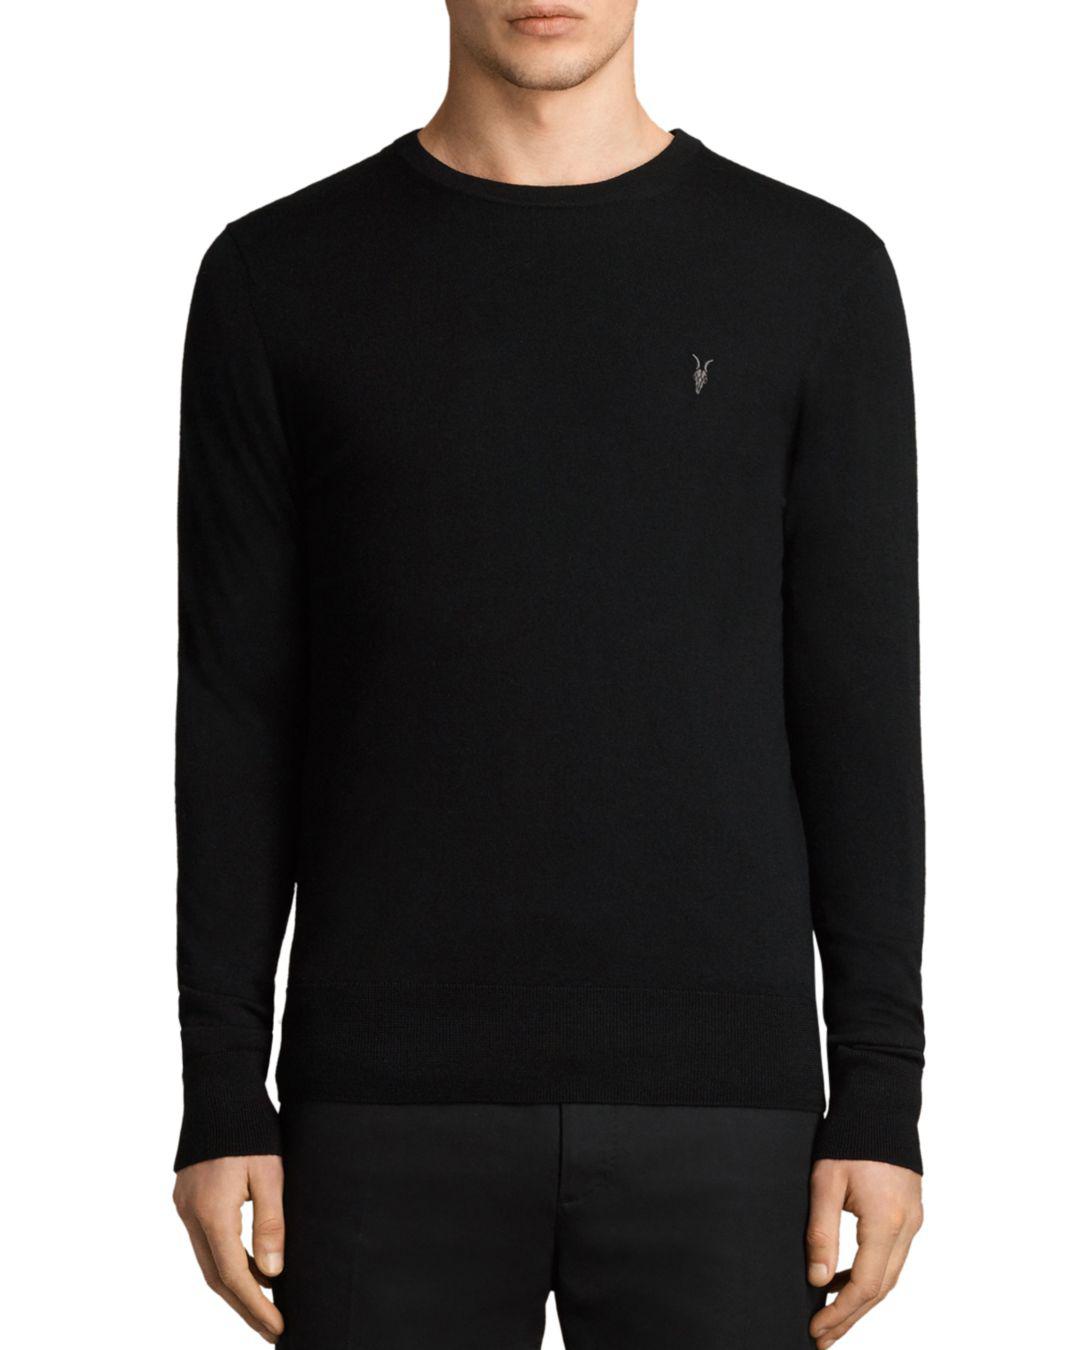 AllSaints Mode Merino Sweater in Black for Men - Lyst